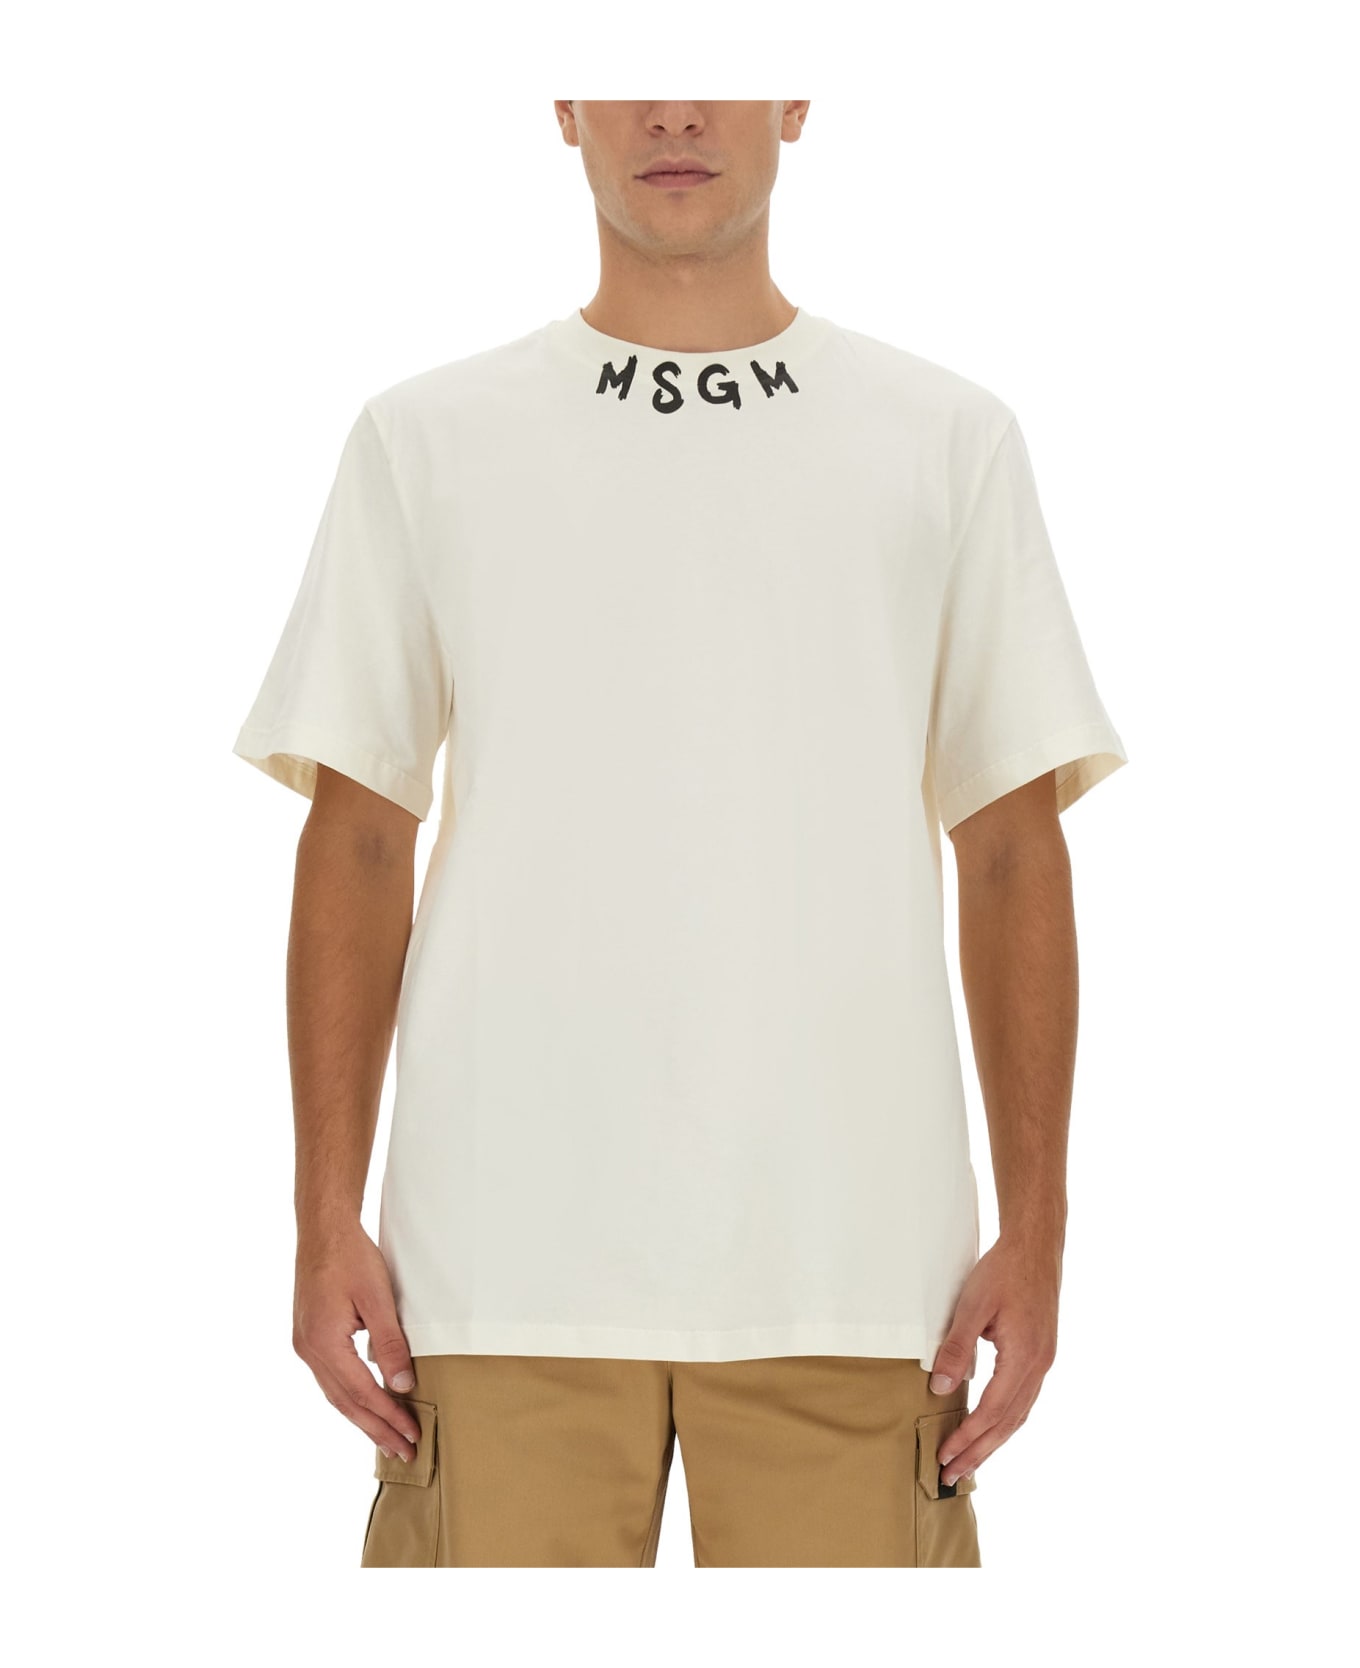 MSGM Logo Print T-shirt - Crema シャツ